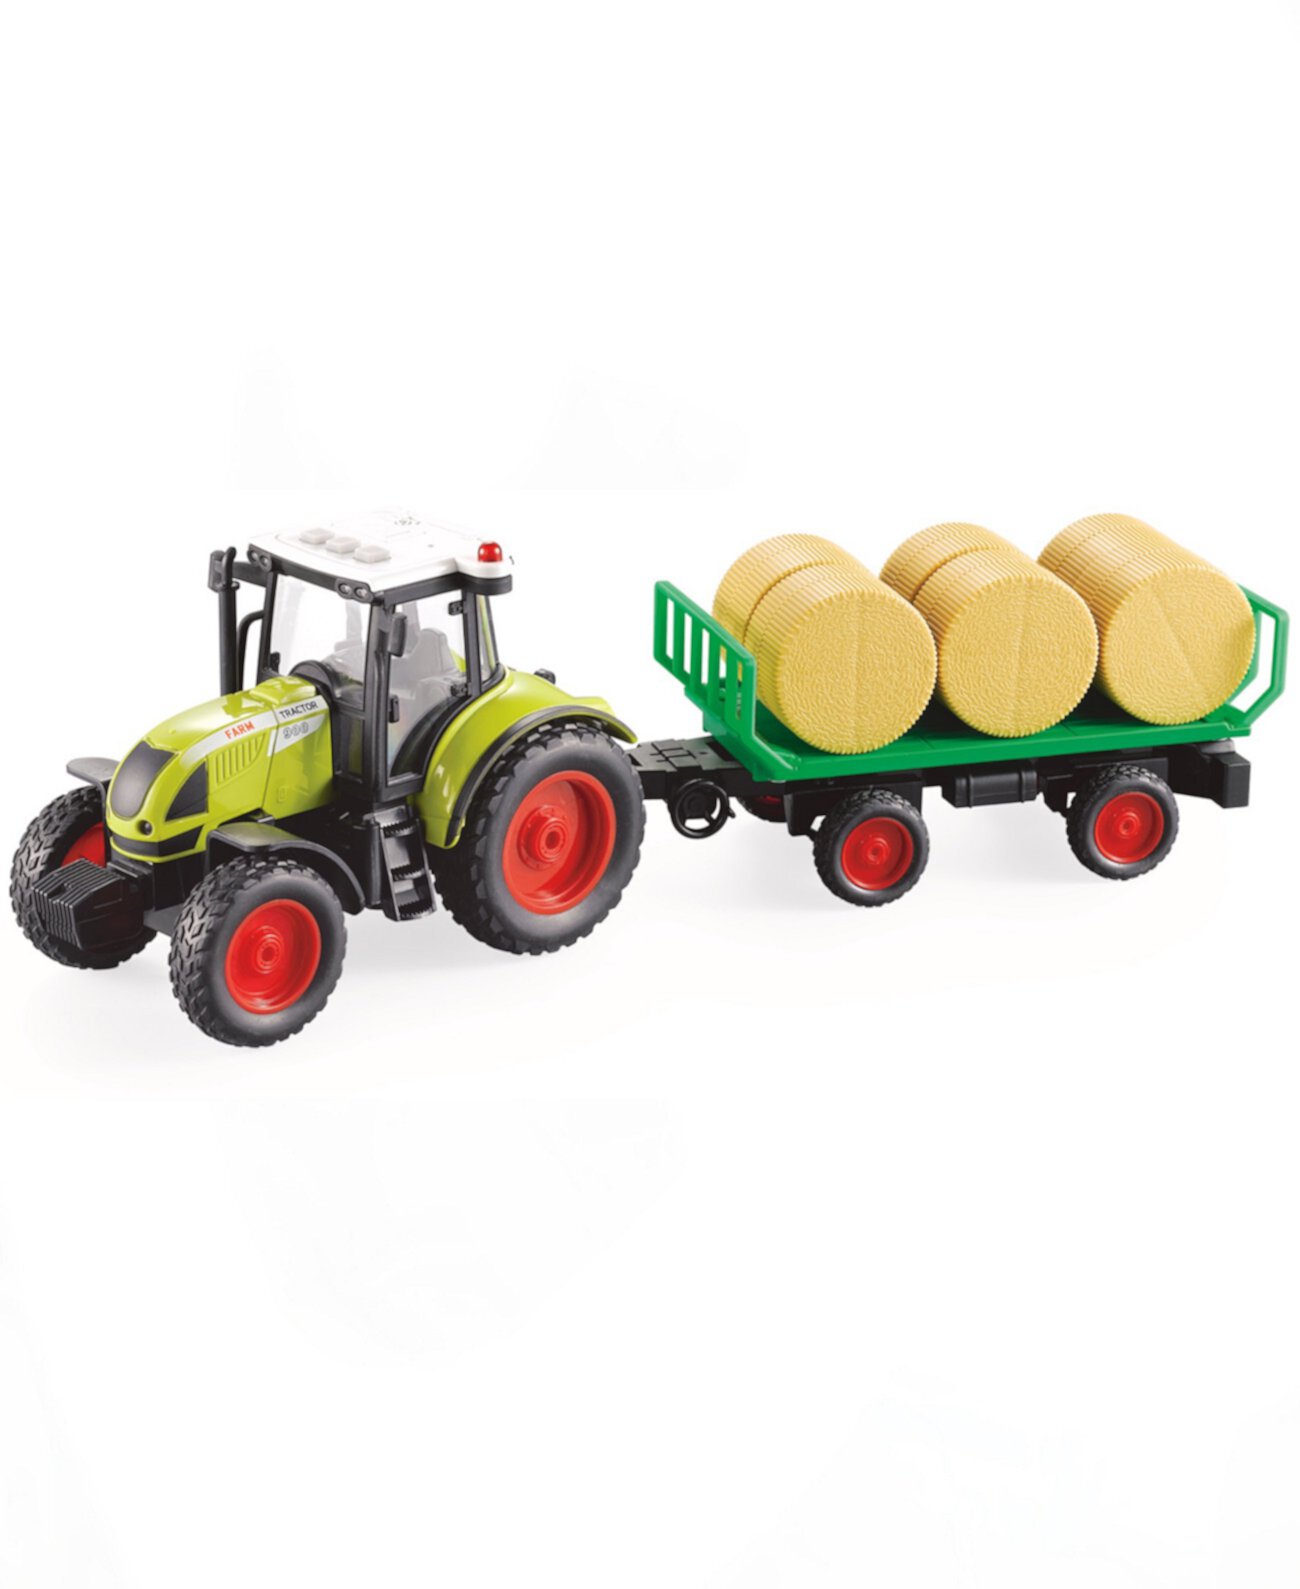 Сельскохозяйственный тракторный прицеп для перевозки бочек с сеном Big Daddy